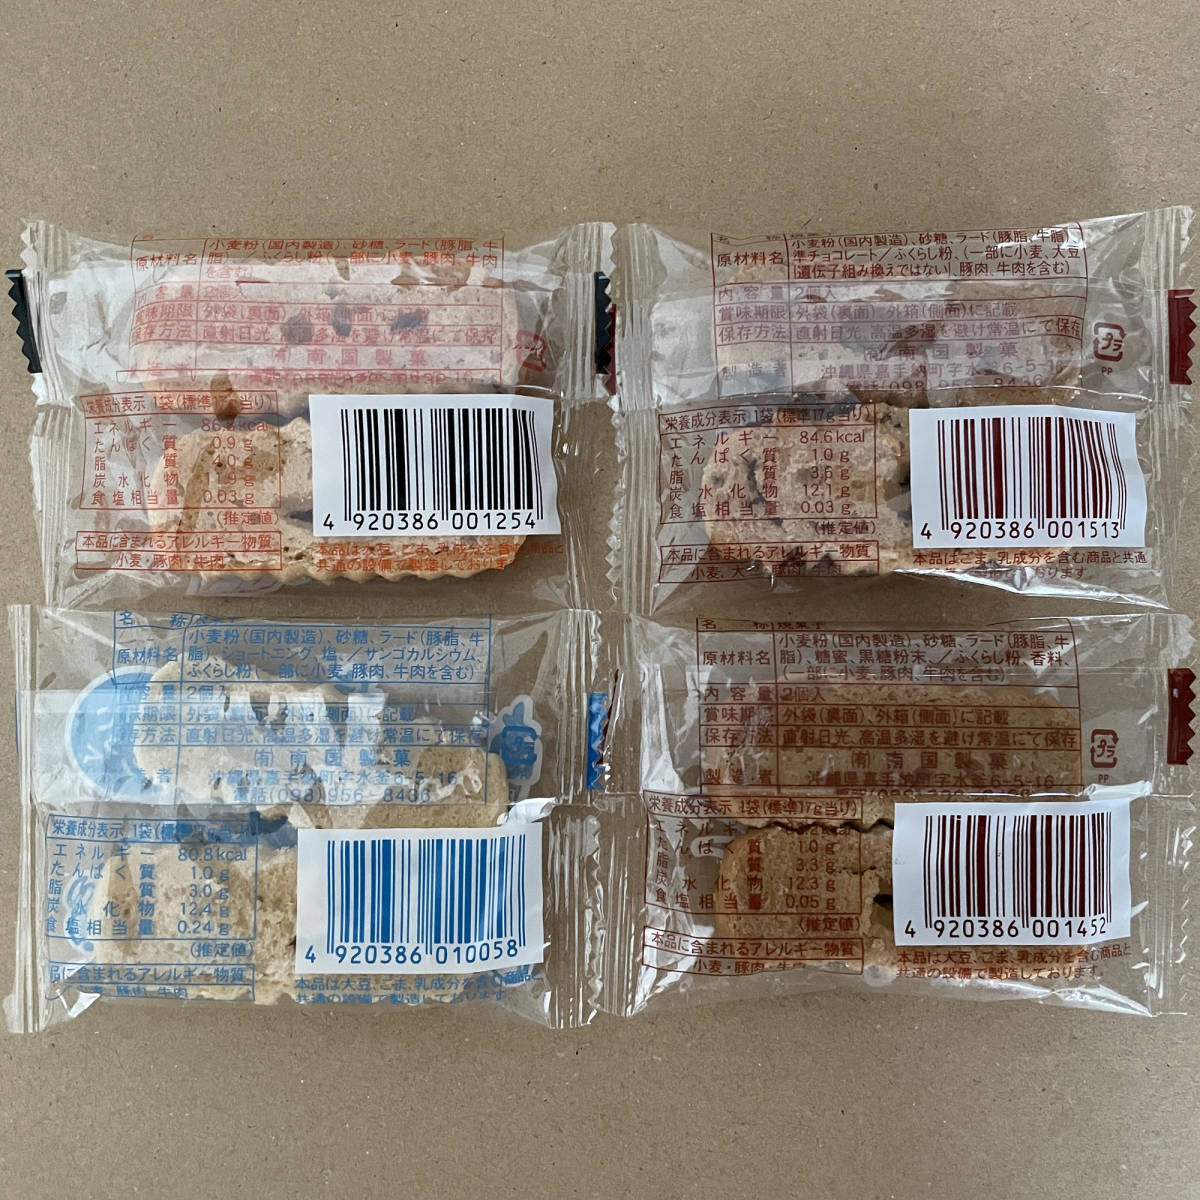 ちんすこう 4種類の詰め合わせA 32袋 64個 沖縄 お菓子 南国製菓_画像2